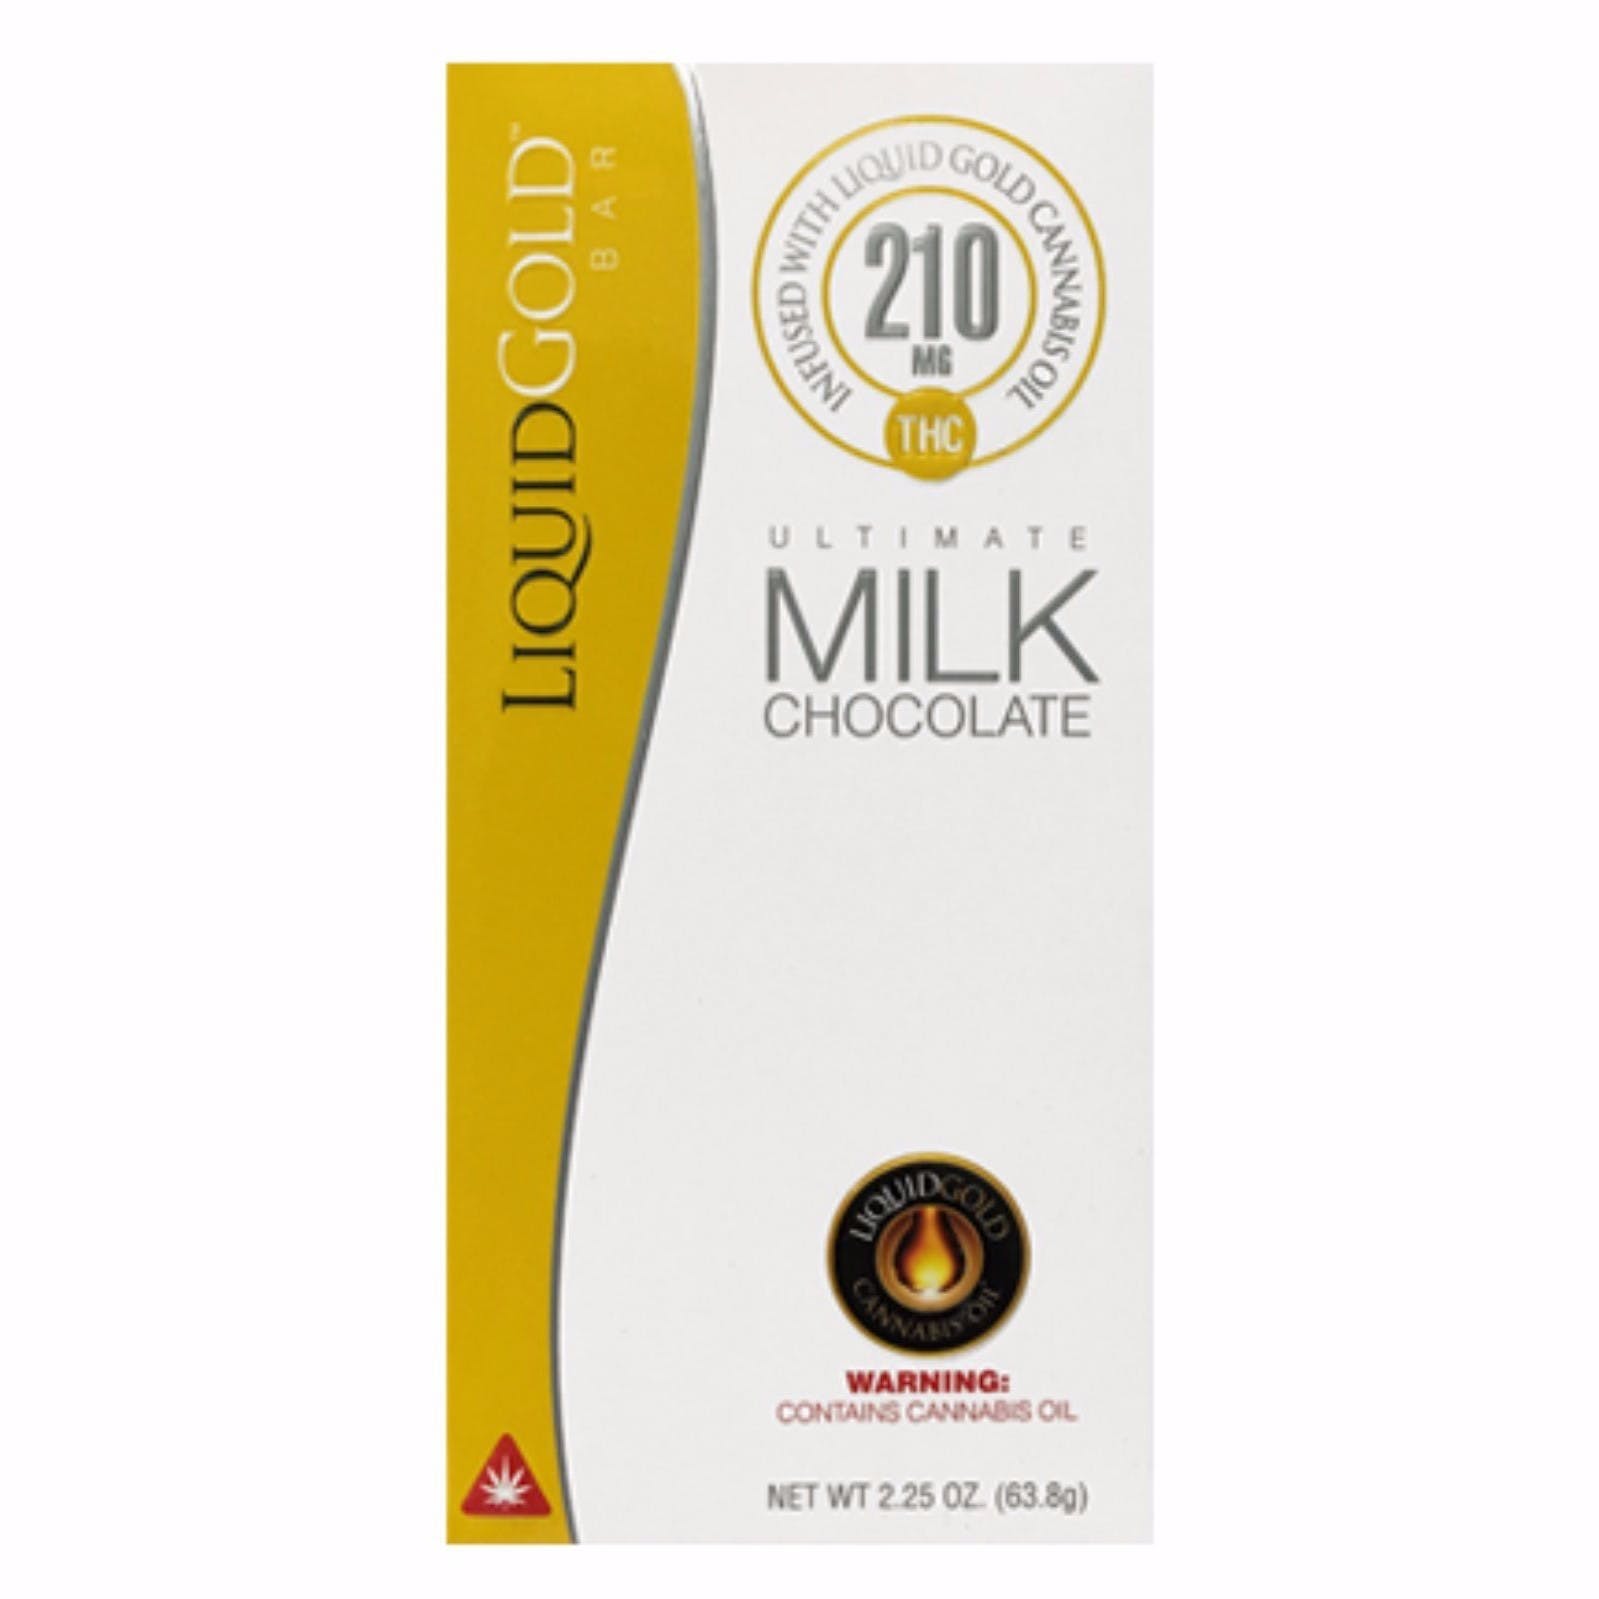 Liquid Gold Milk Chocolate